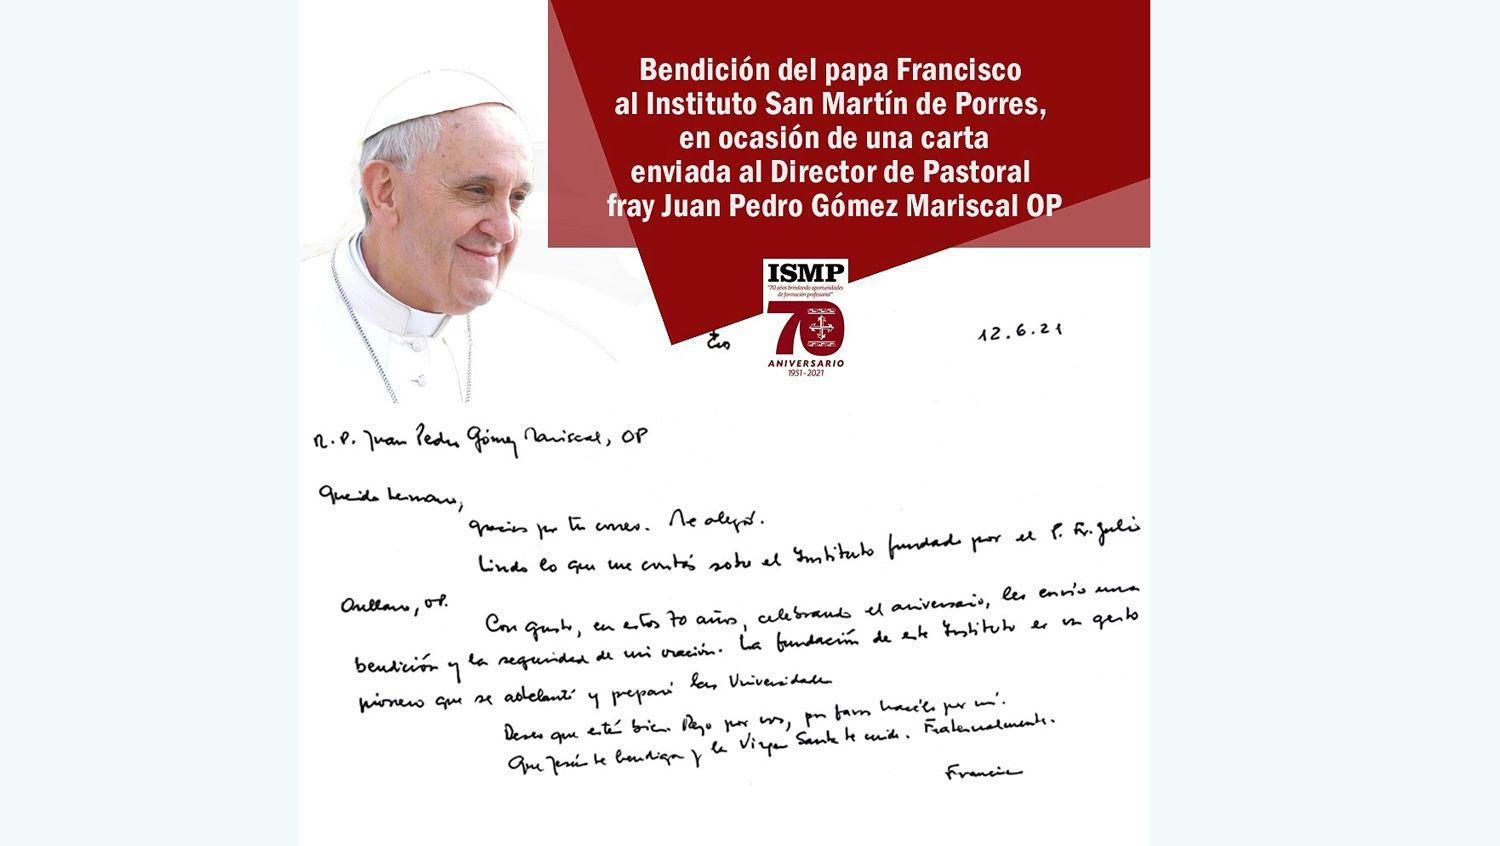 El Papa envioacute bendiciones al Instituto de Estudios  Sup San Martiacuten de Porres